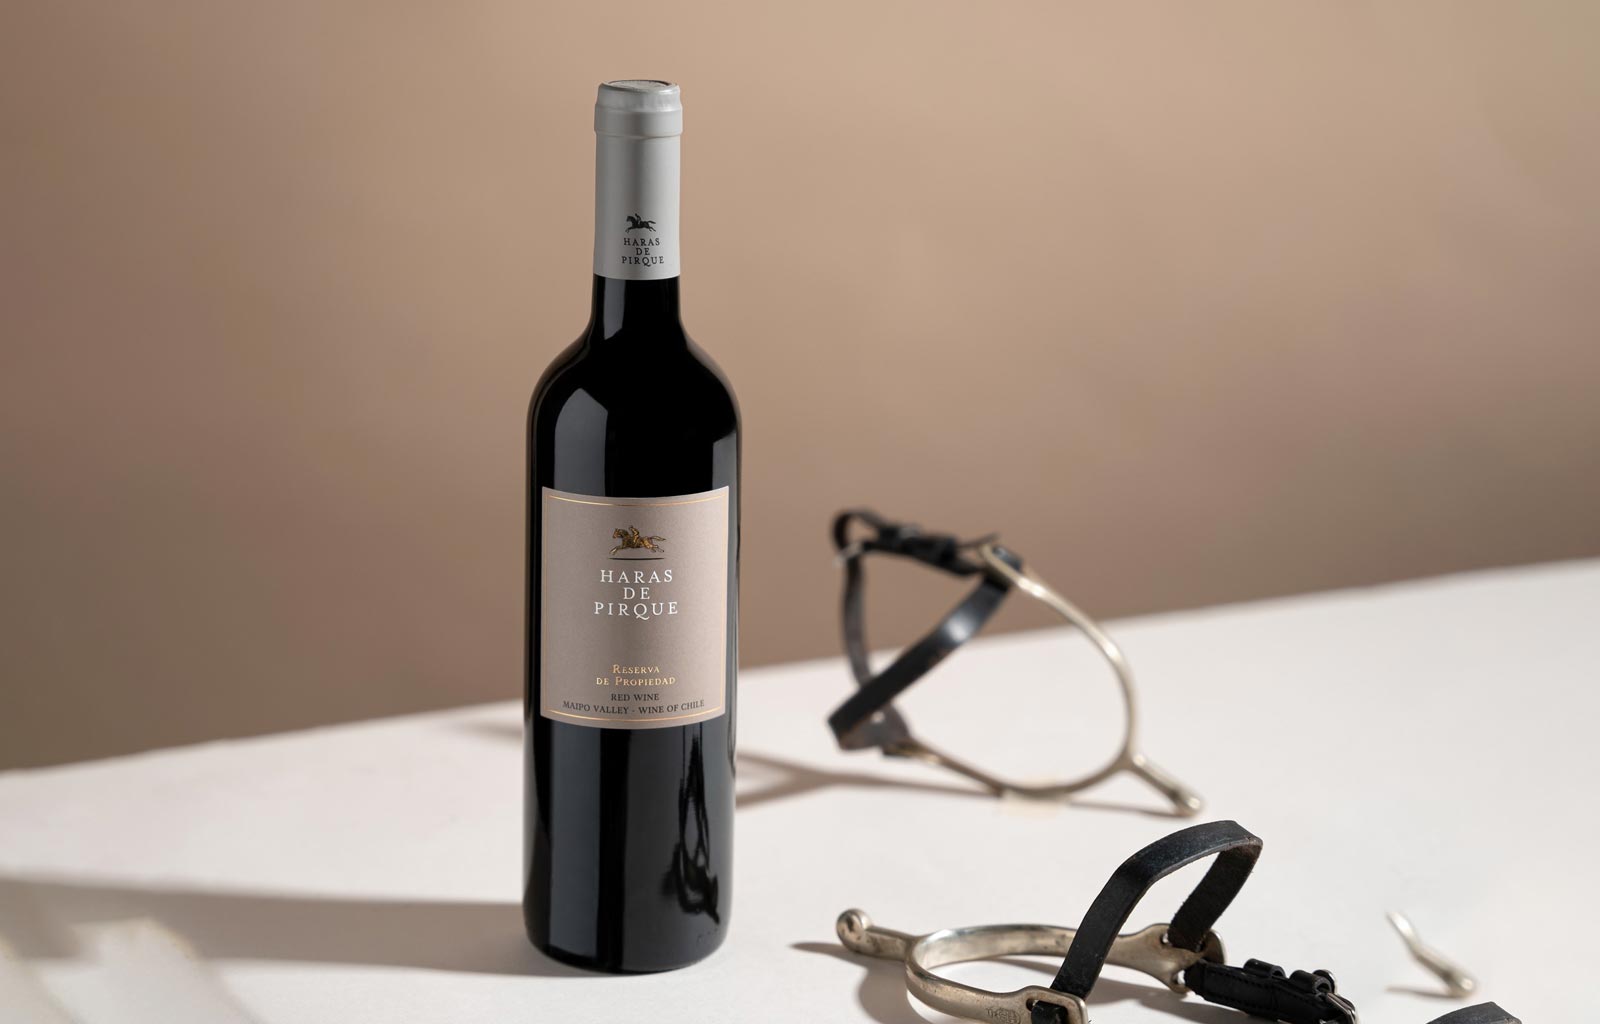 Haras De Pirque - Rượu vang Chile xuất sắc trong tầm giá